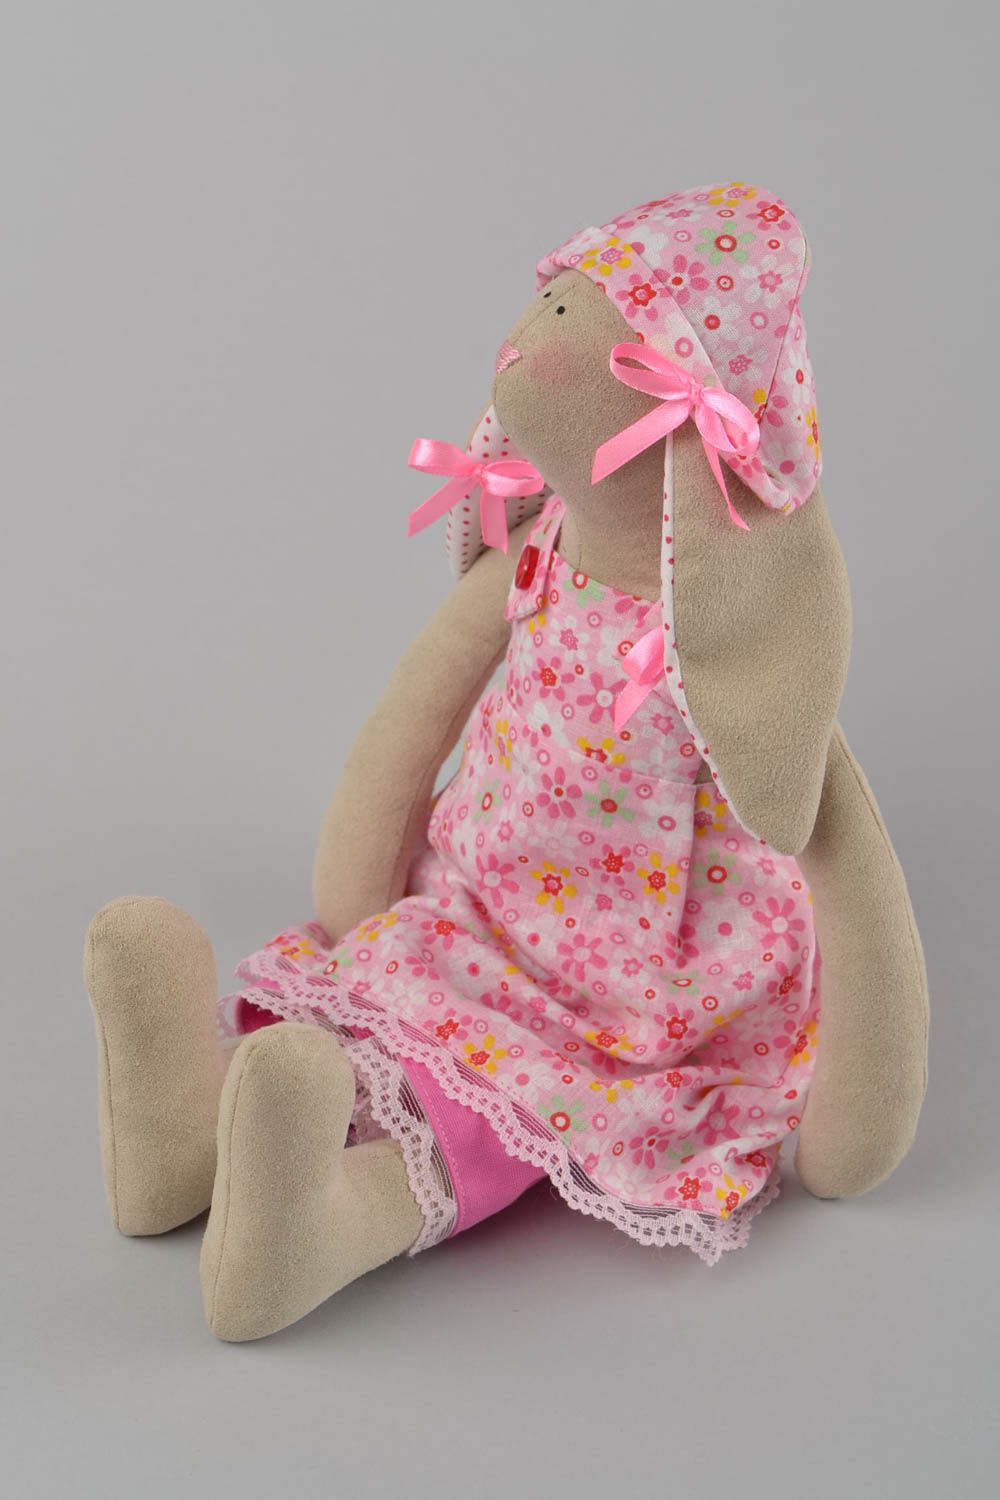 Мягкая игрушка зайчиха из ткани ручной работы в розовом наряде красивая для дома фото 1